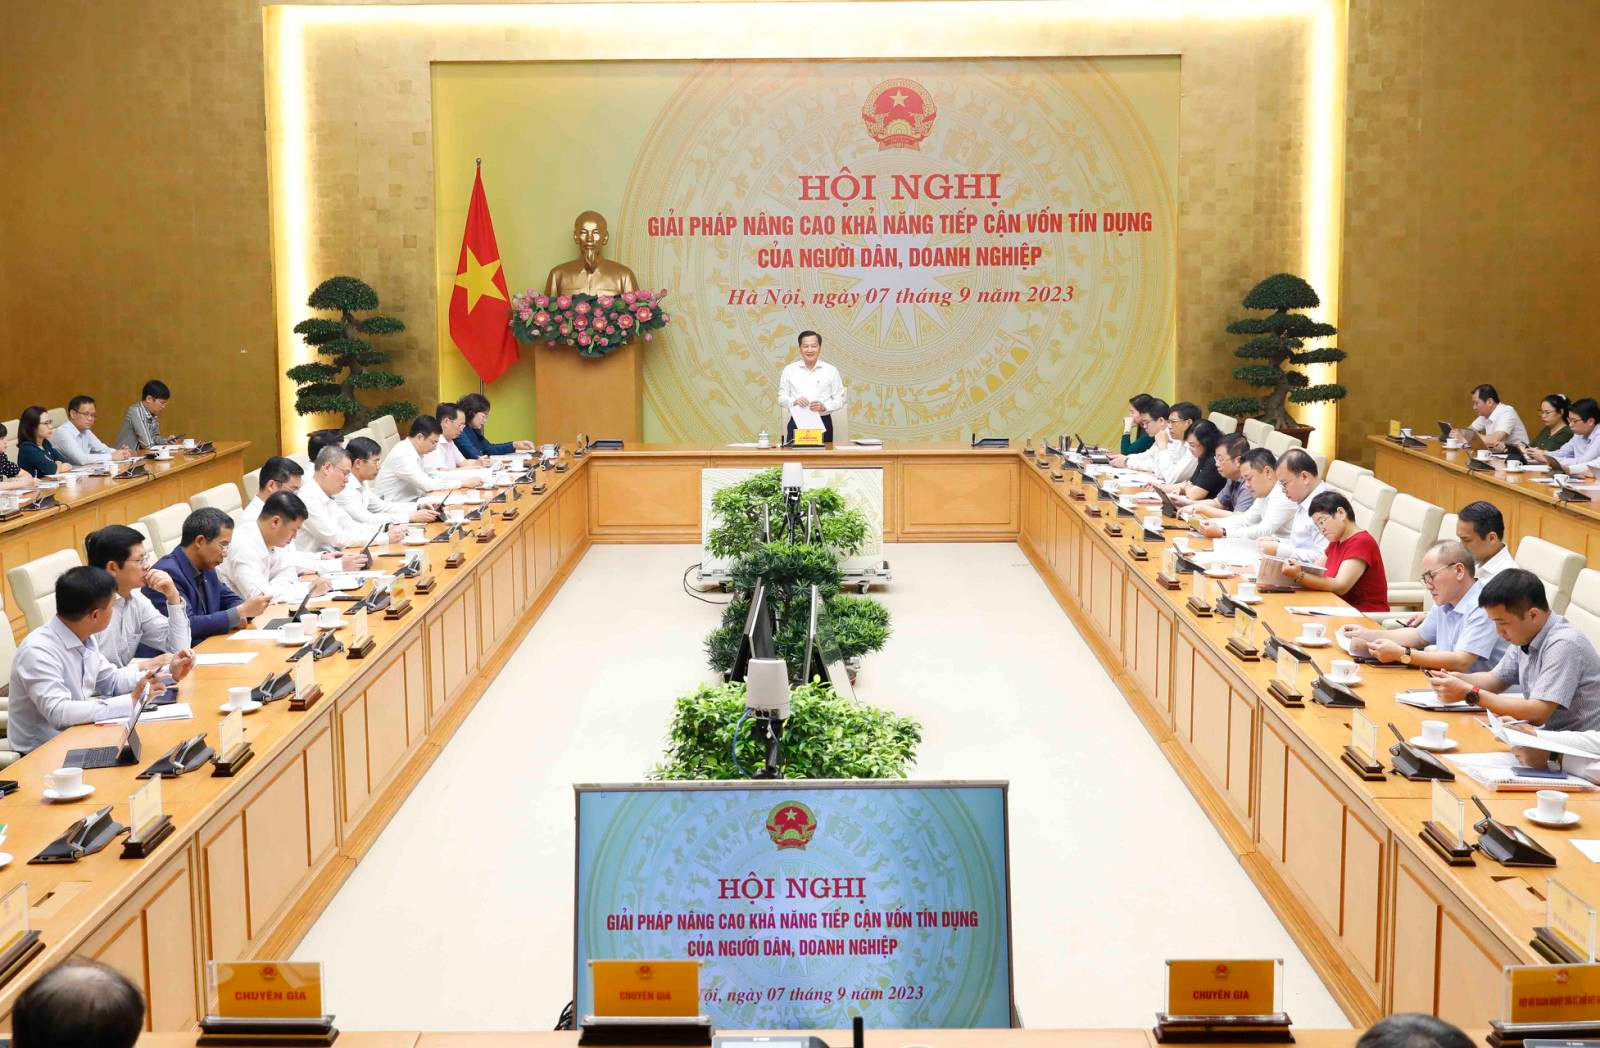 Phó Thủ tướng Lê Minh Khái chủ trì họp bàn giải pháp nâng cao khả năng tiếp cận tín dụng của người dân, doanh nghiệp - Ảnh 8.